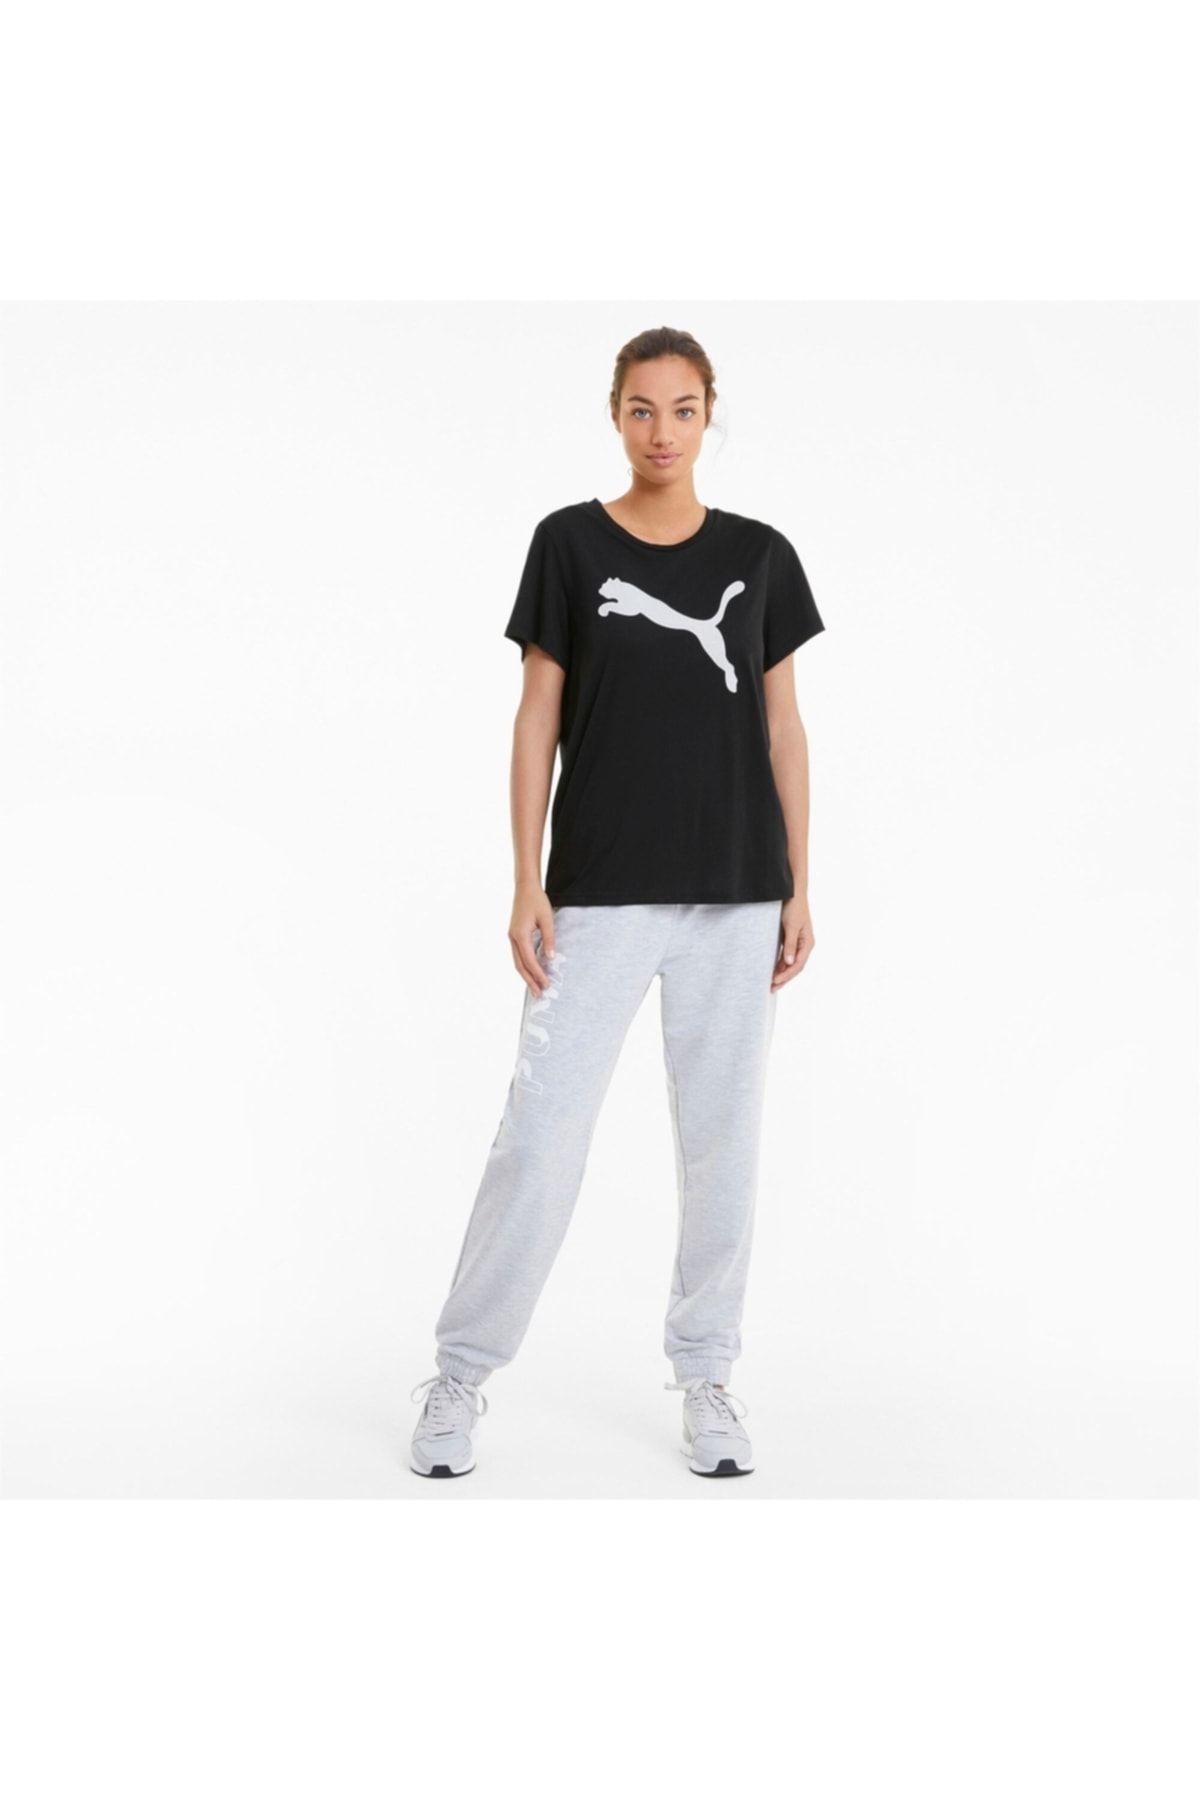 Sports - Puma Trendyol T-Shirt - Black